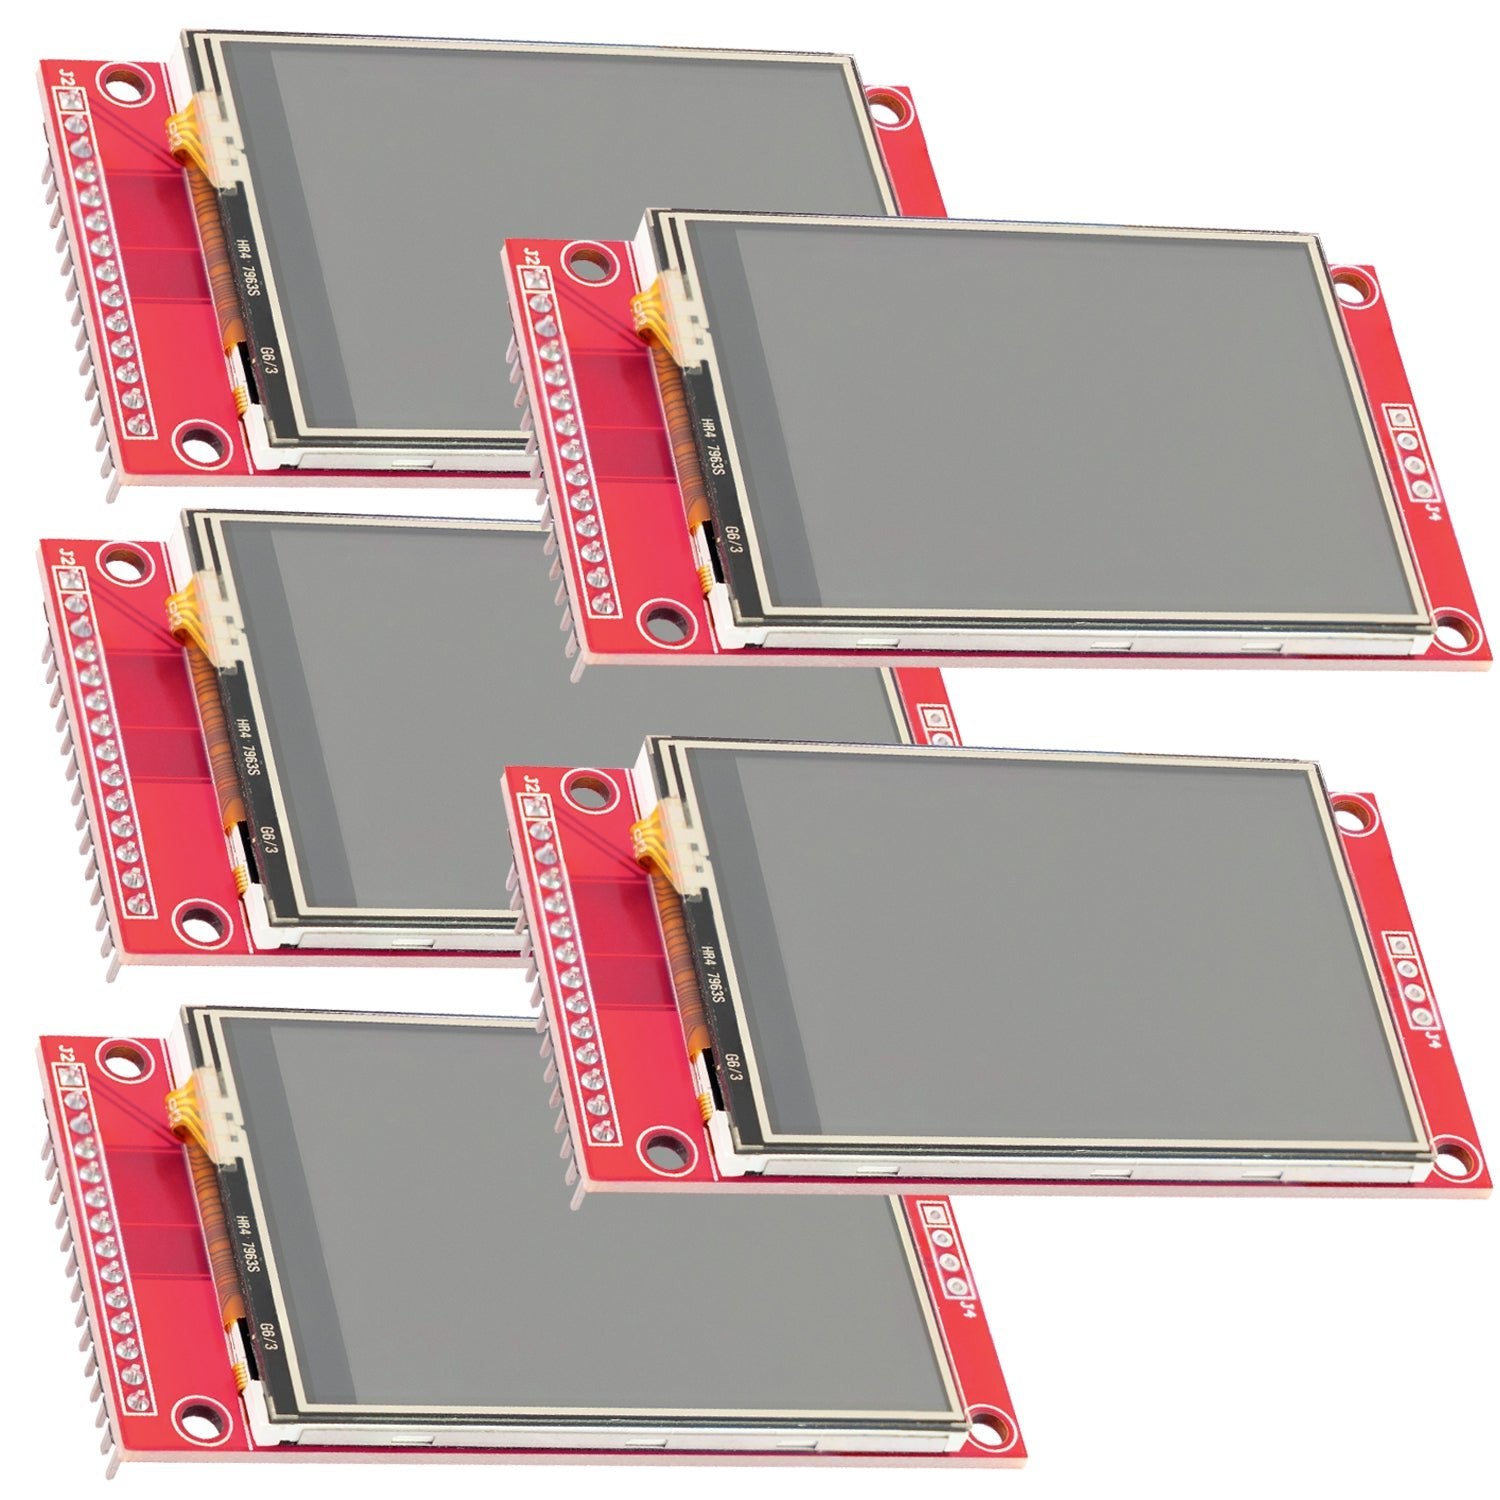 2,4 Zoll LCD TFT Touch Display - Kompatibel mit Arduino und Raspberry Pi - 320x240 Auflösung, ILI9341 Treiber, SPI Schnittstelle - AZ-Delivery